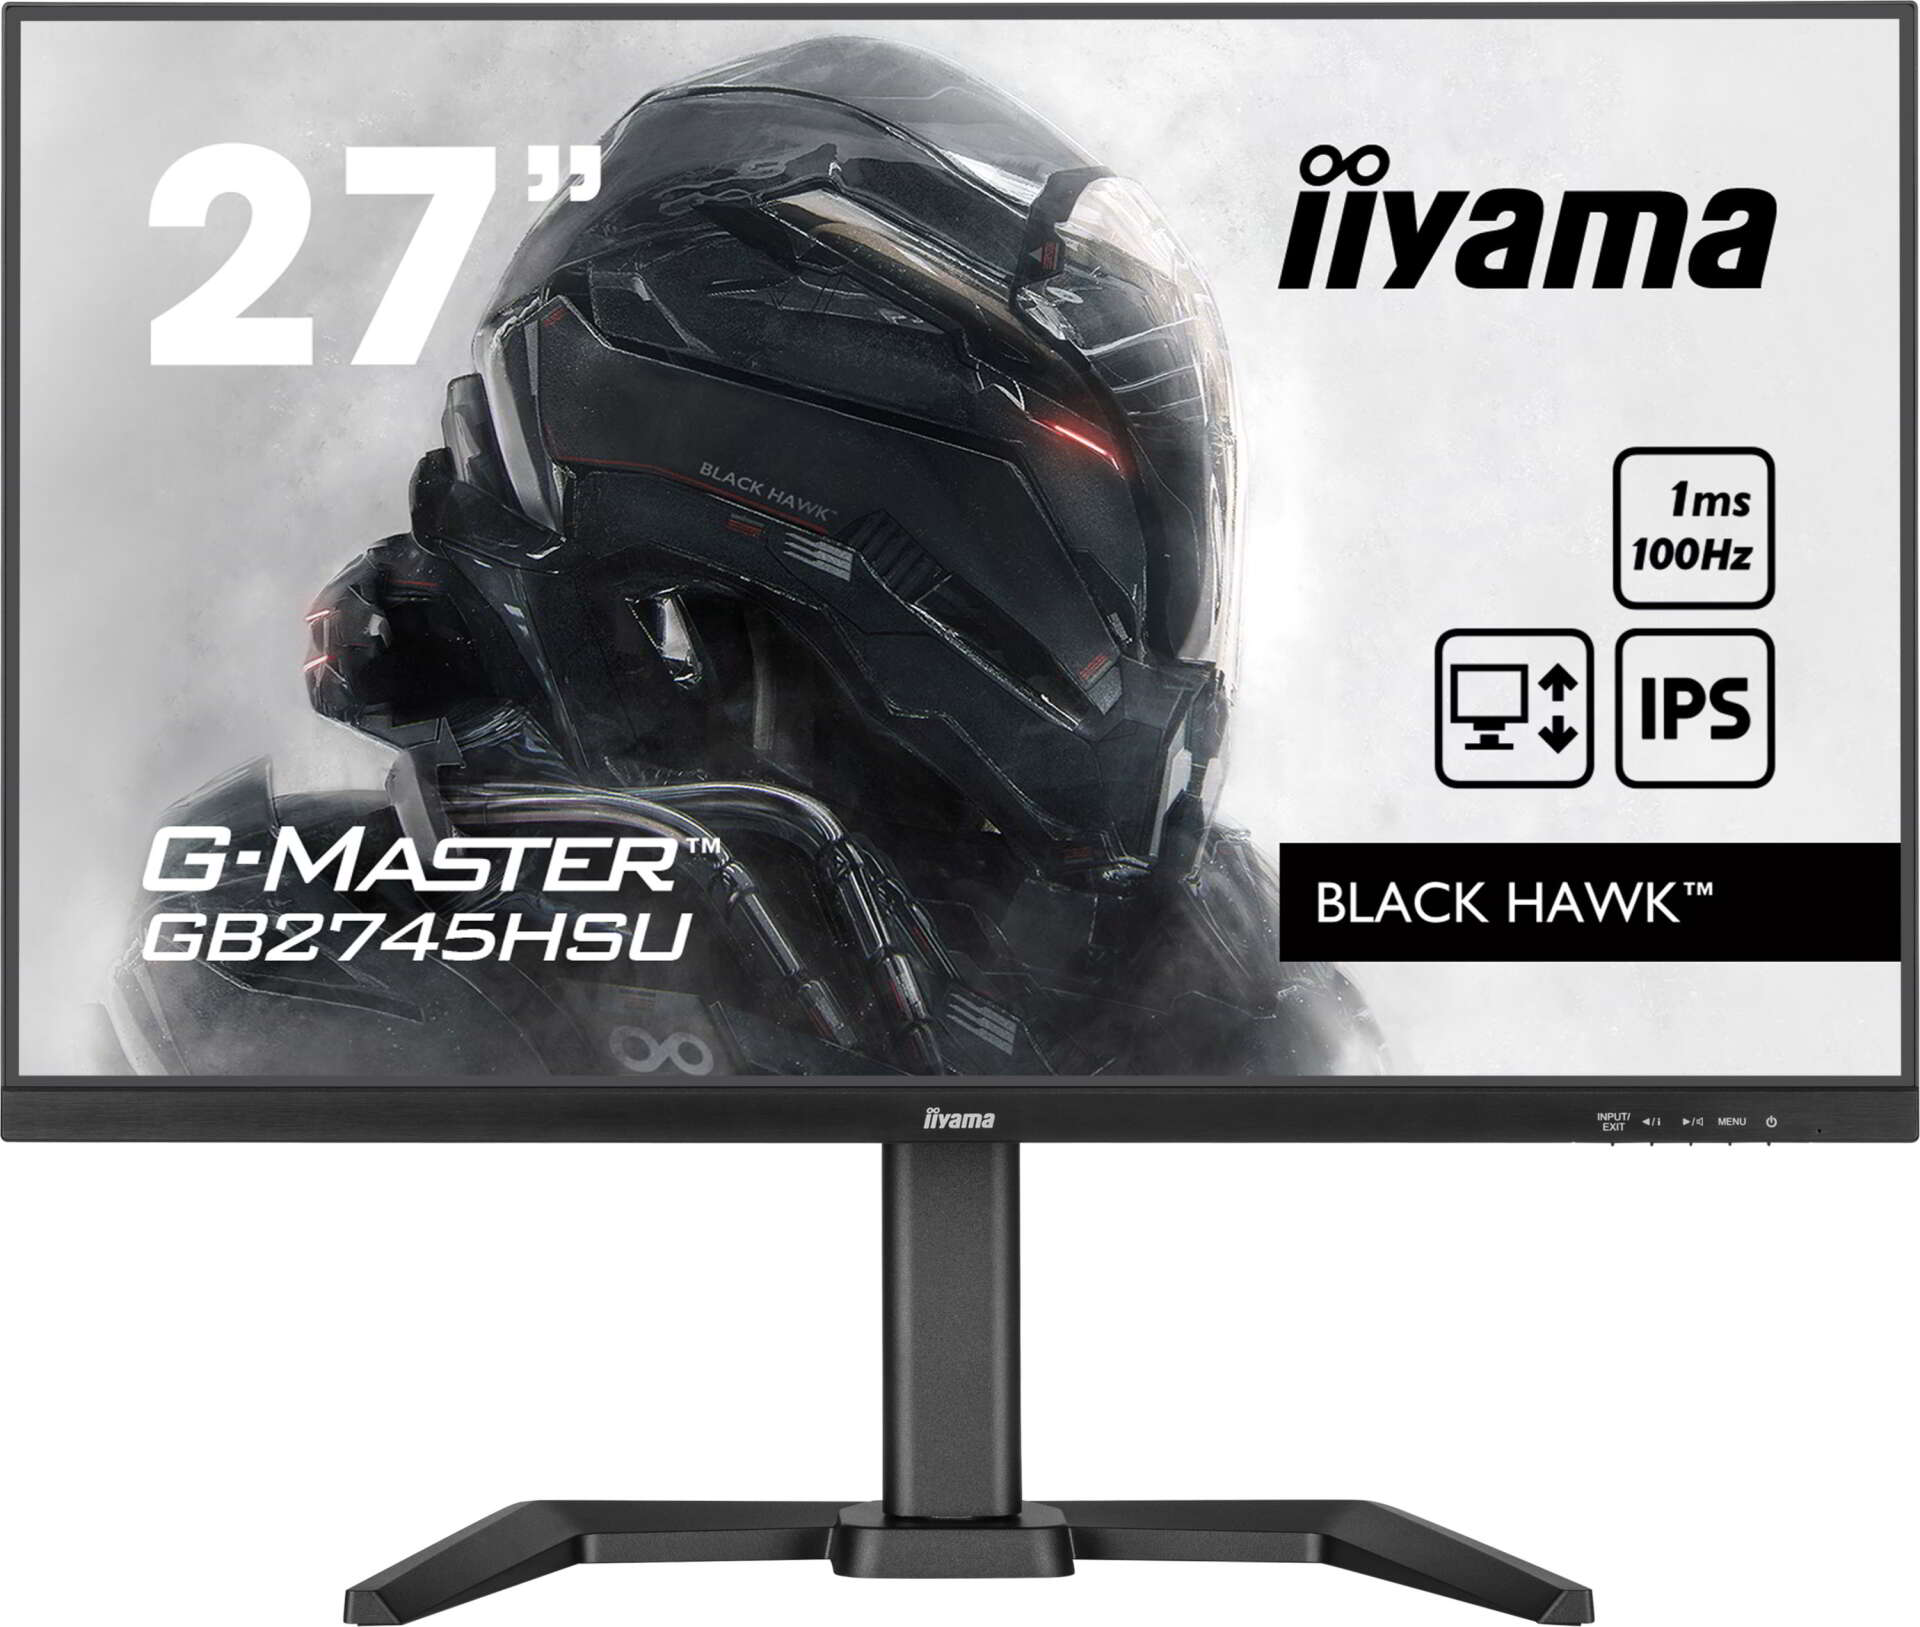 Iiyama 27" g-master black hawk gb2745hsu gaming monitor